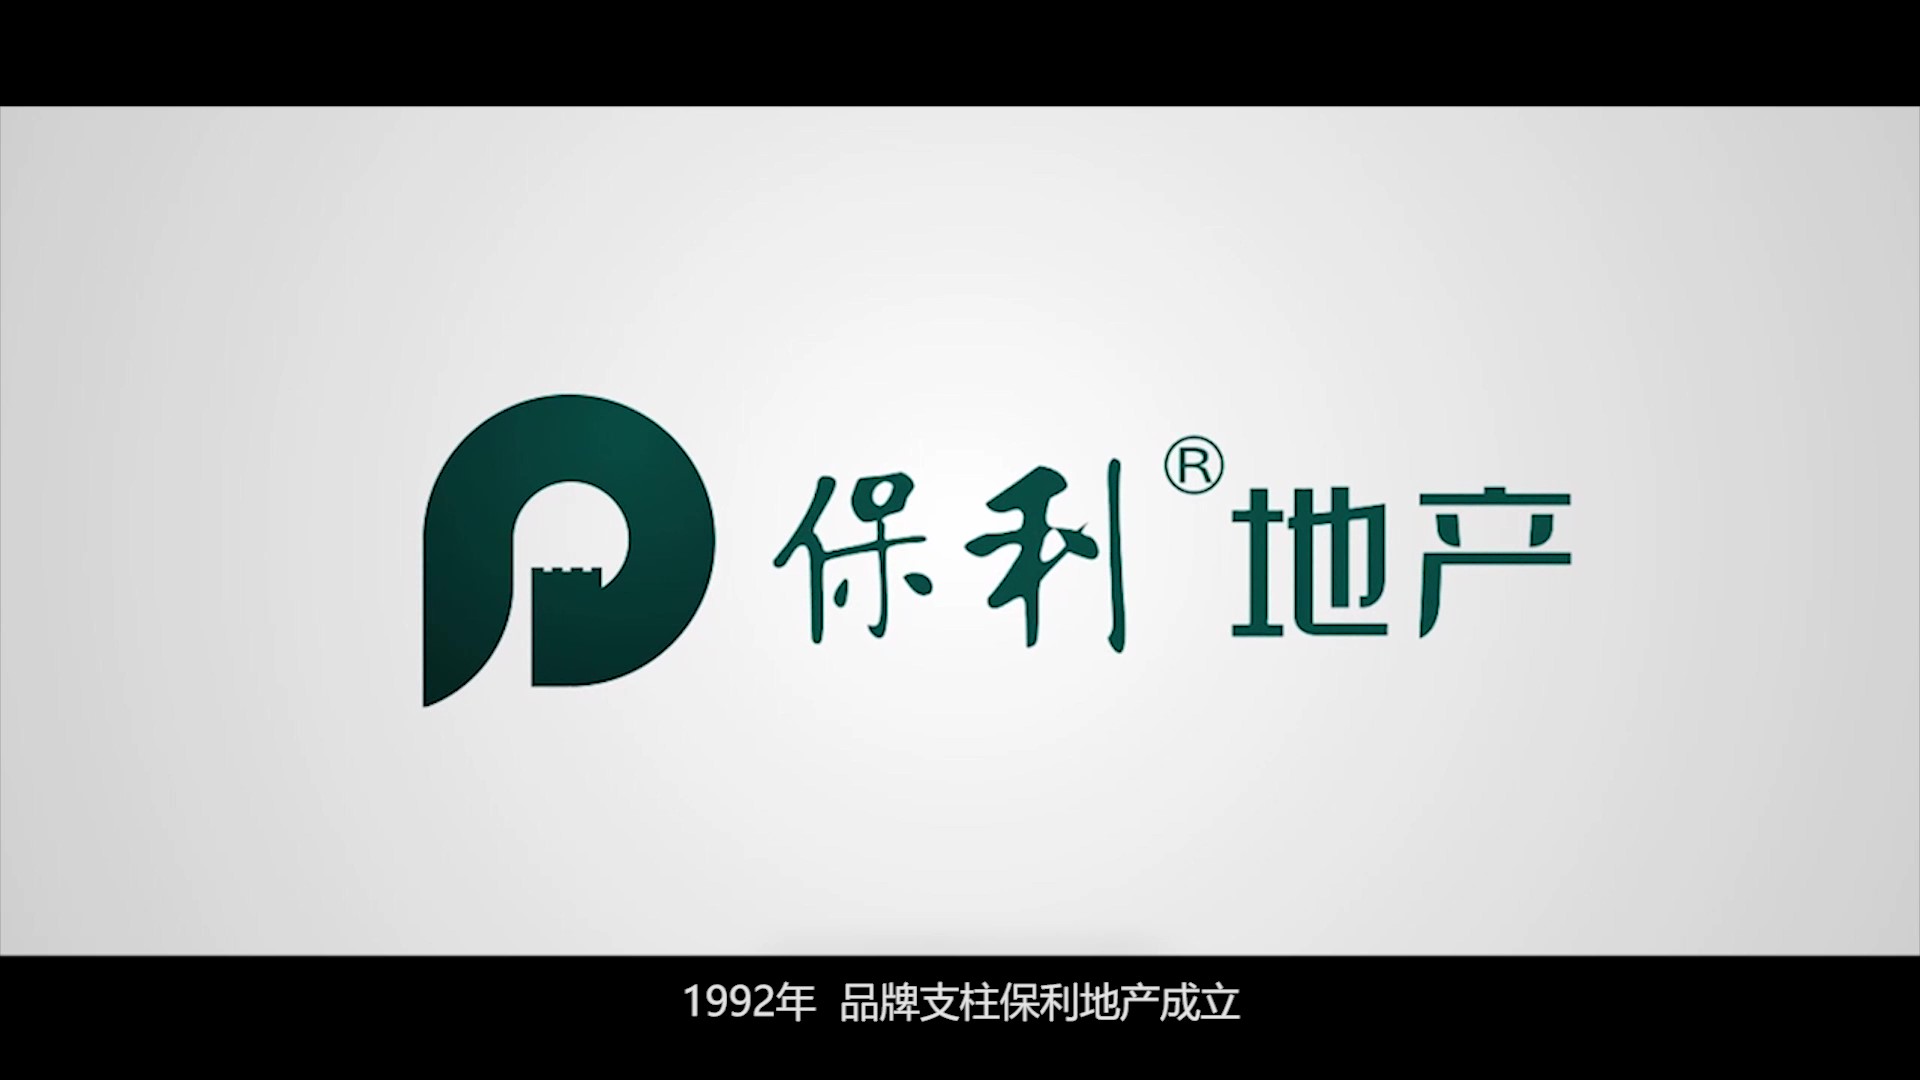 广州云海峰影视传媒有限公司,拍摄了一部讲述保利房地产企业的发展